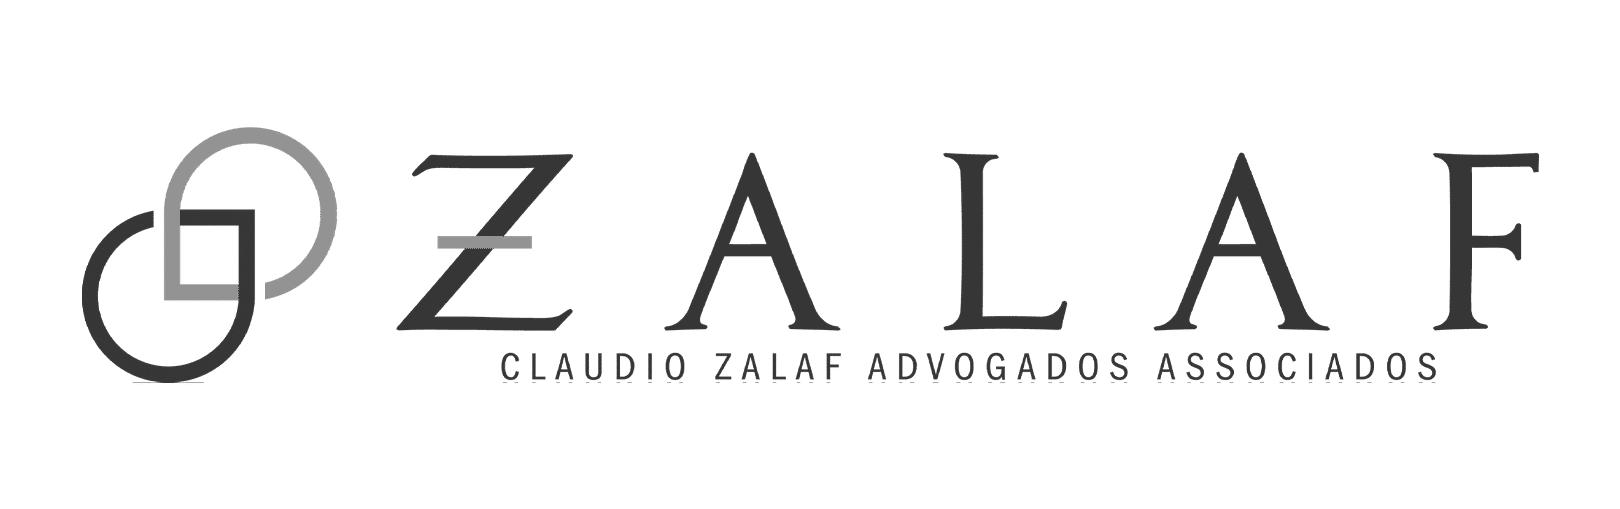 Marketing Jurídico - Zalaf PB